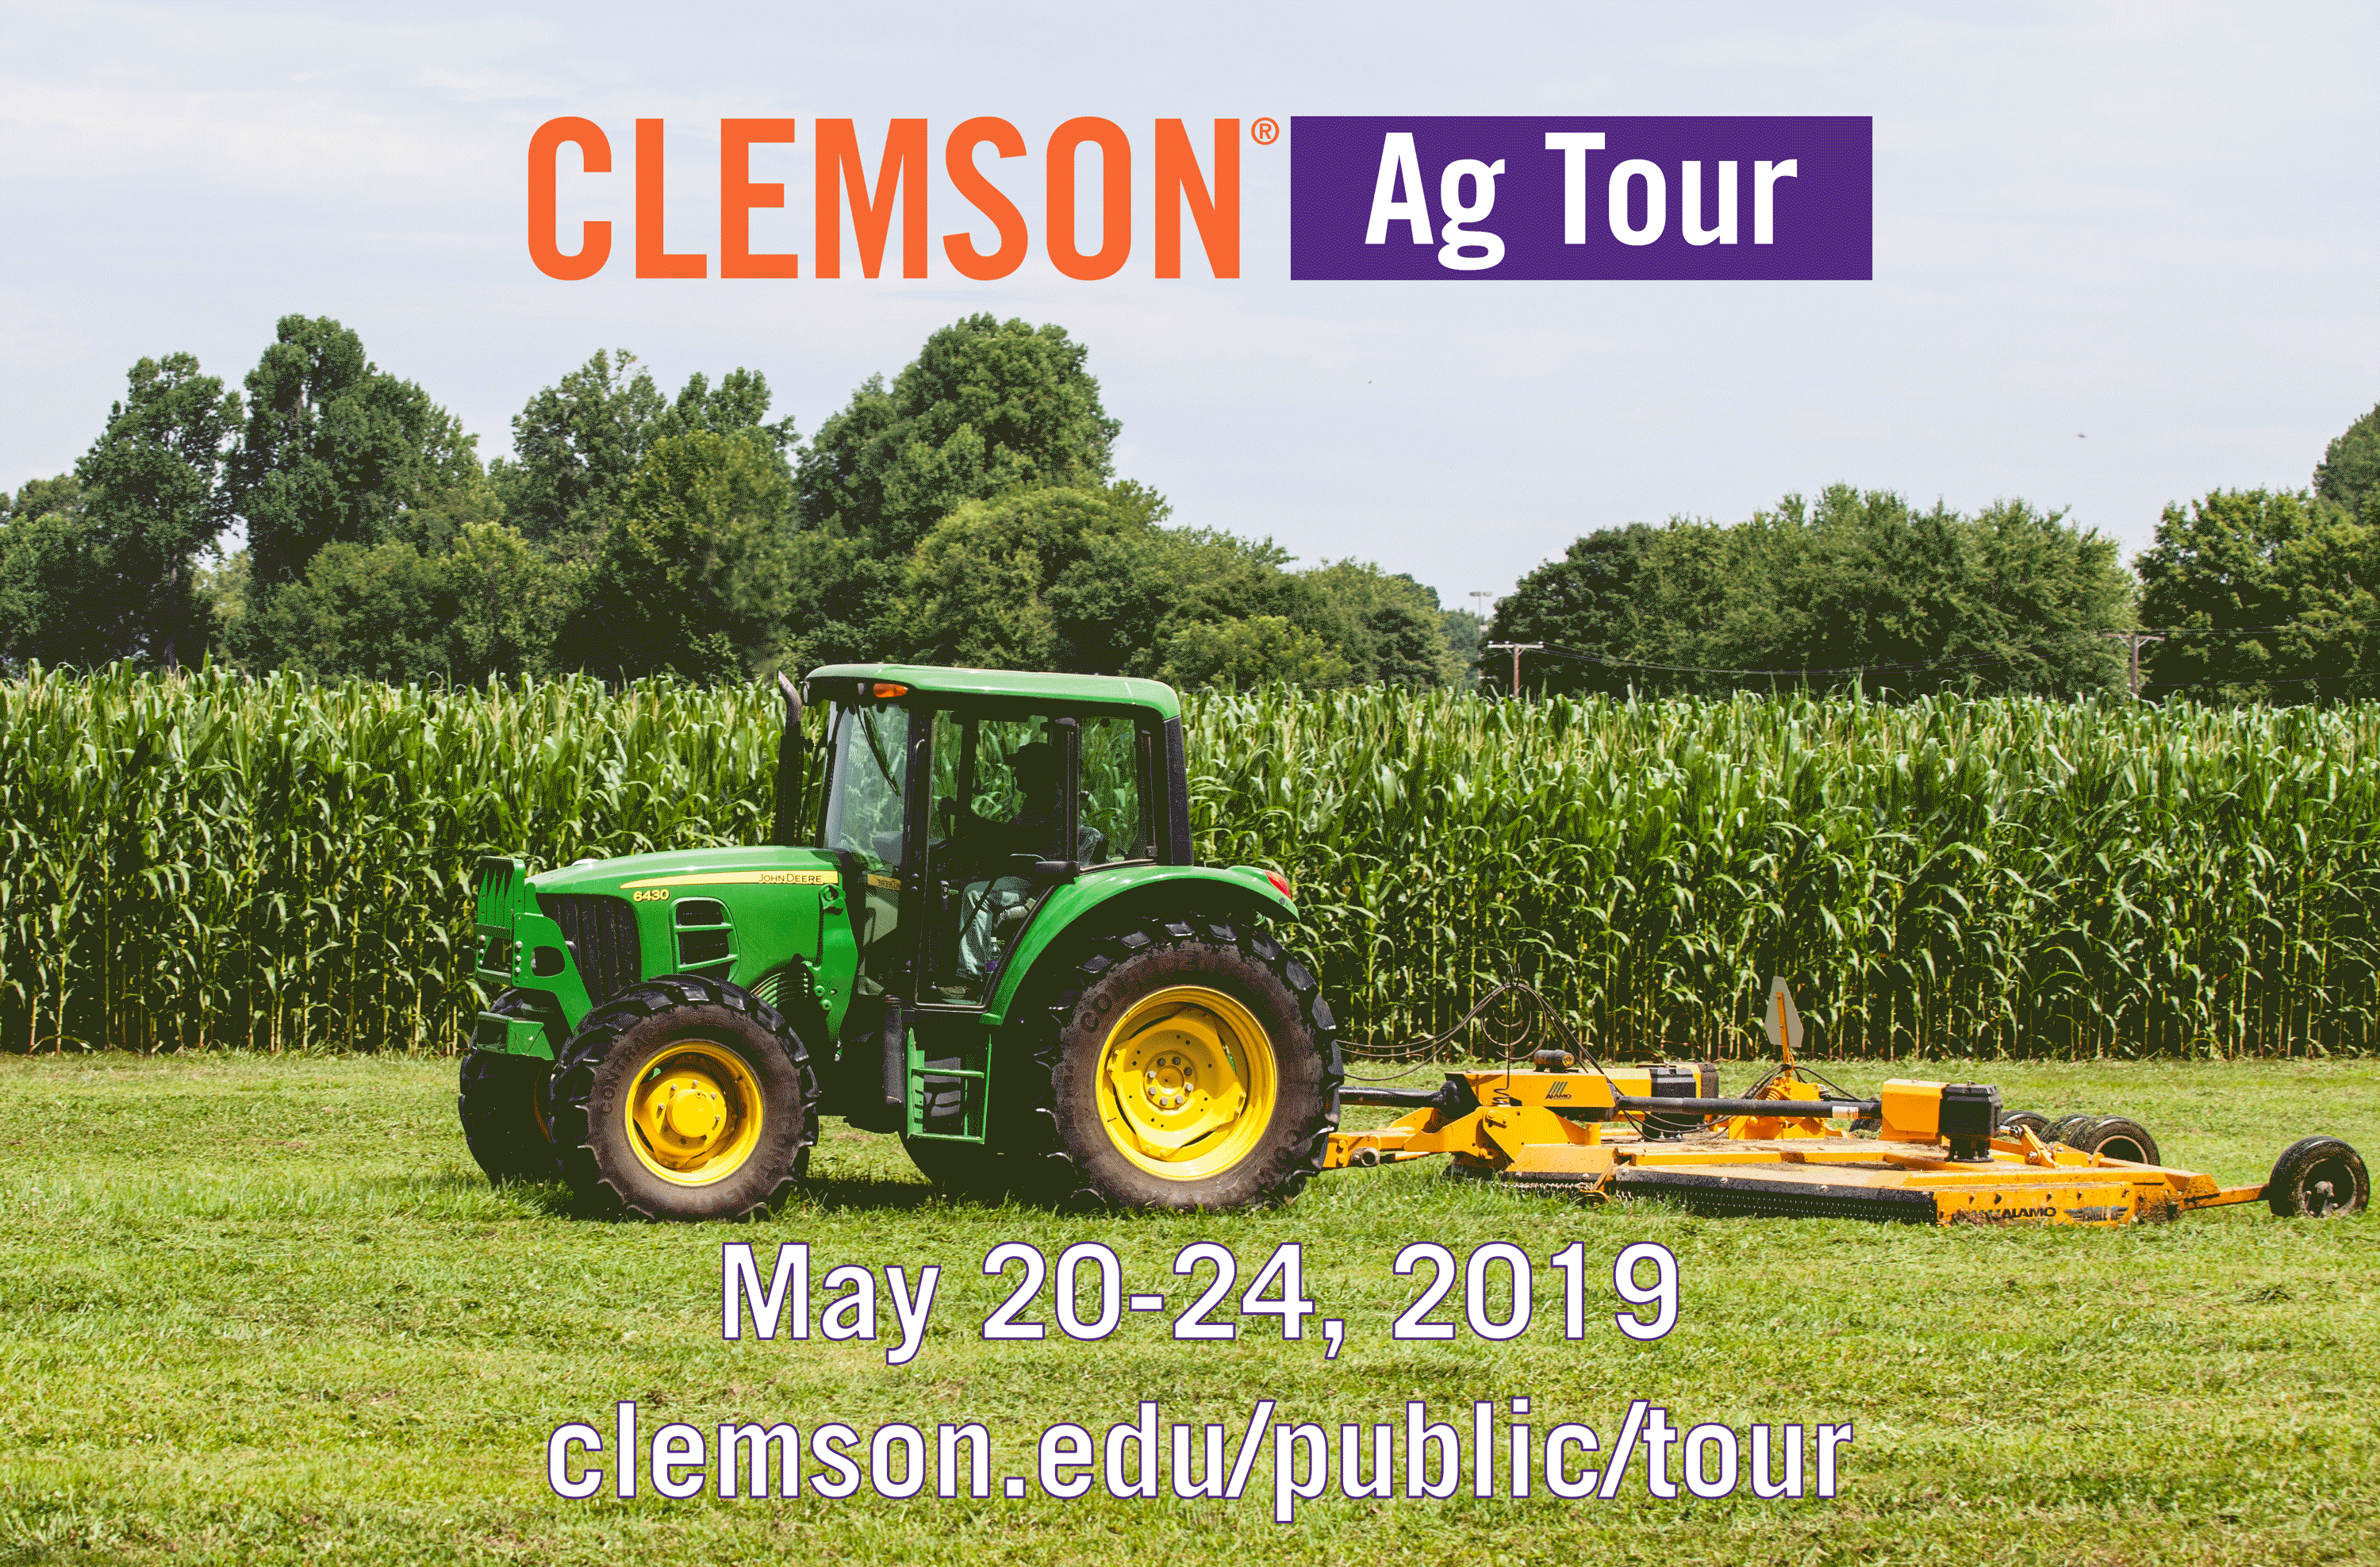 Follow the Clemson Ag Tour May 20 - 24.